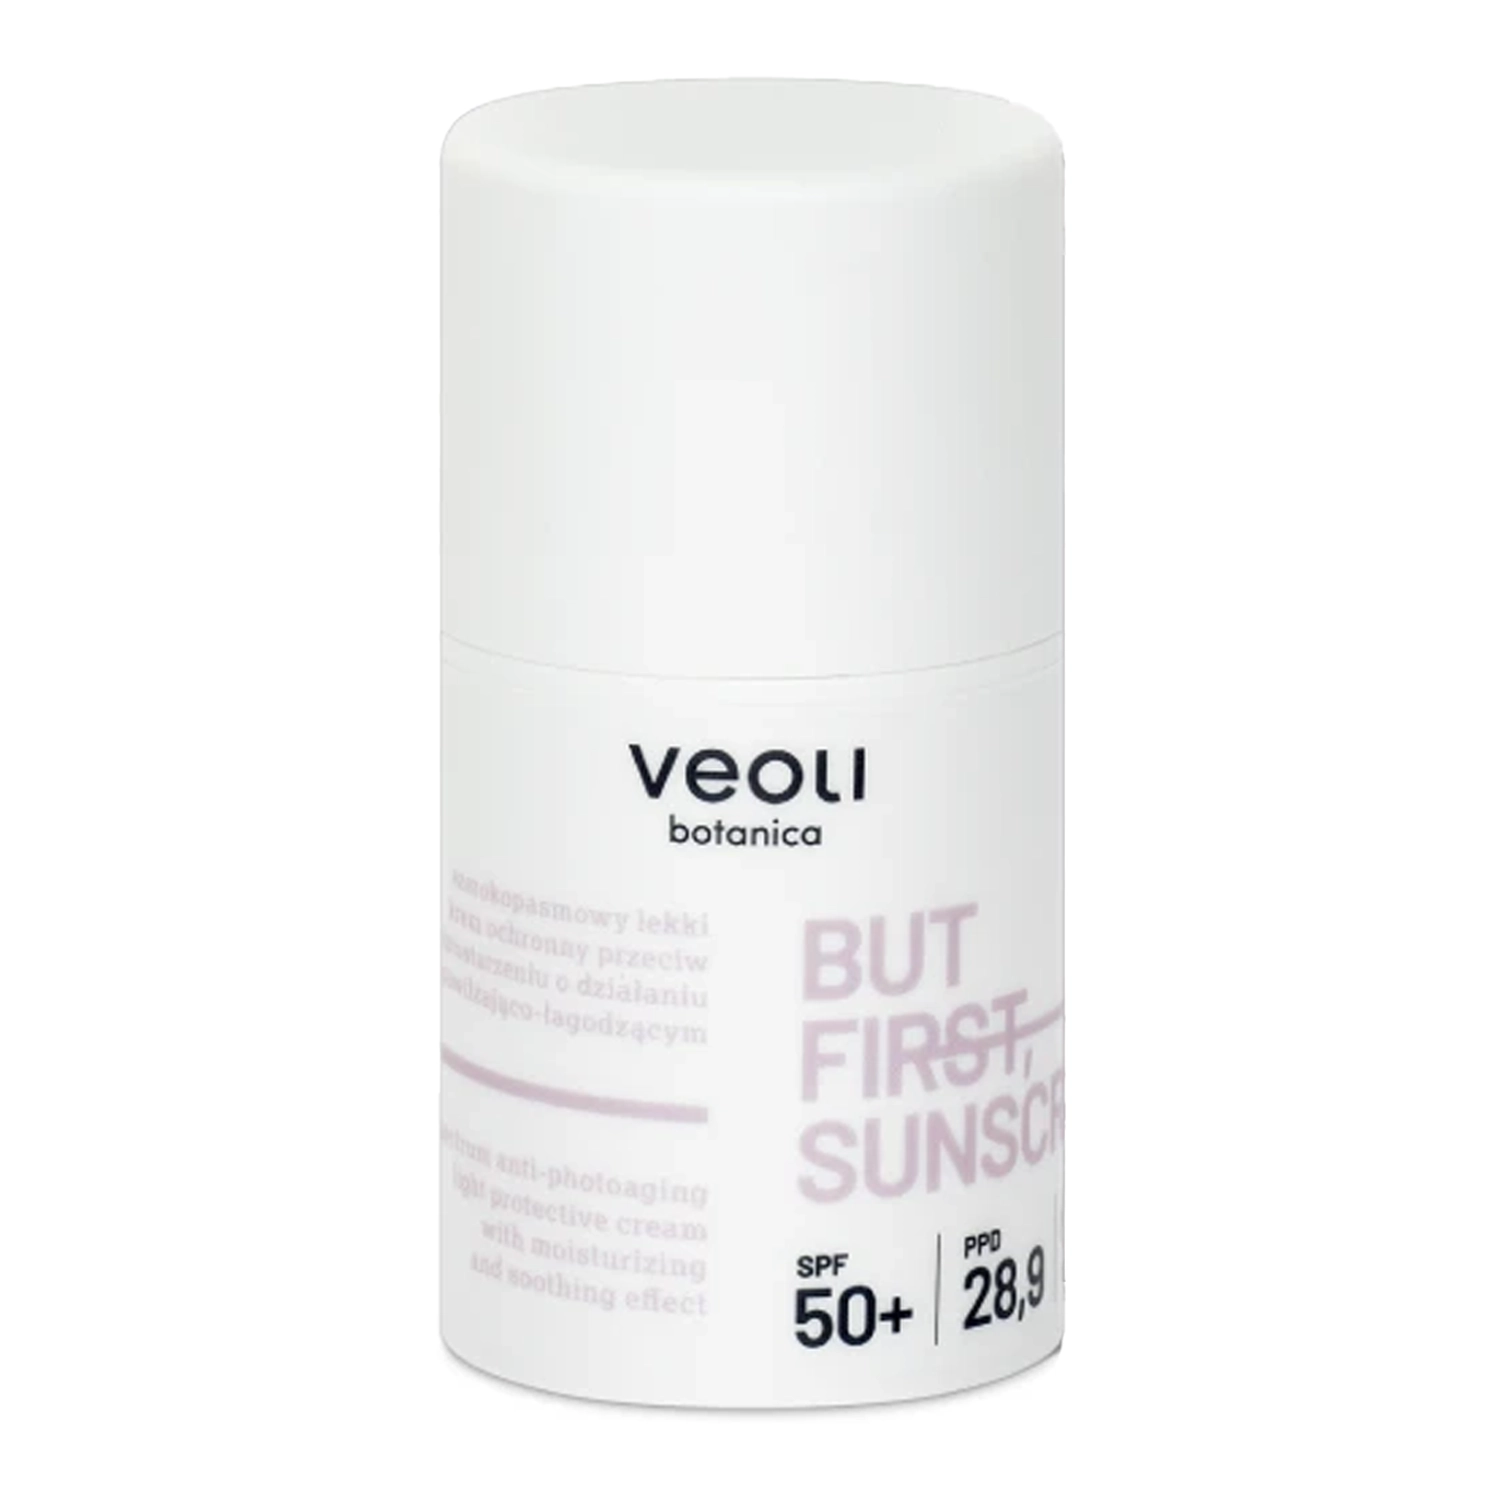 Veoli Botanica - But First, Sunscreen - Легкий сонцезахисний крем широкого спектру дії проти фотостаріння зі зволожувально-заспокійливим ефектом - 50ml